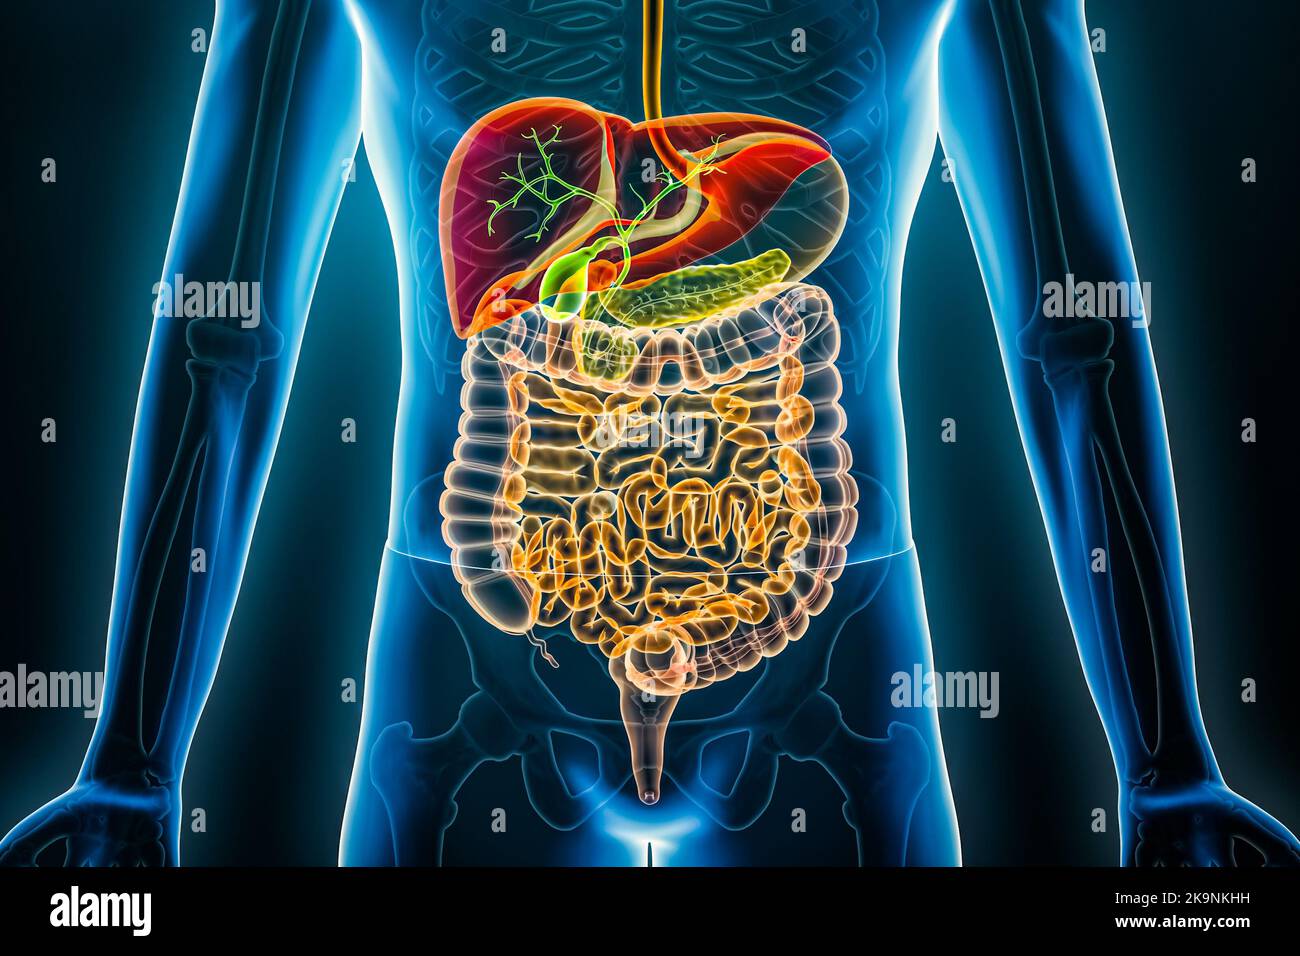 Radiografia dell'apparato digerente umano. Organi del tratto gastrointestinale 3D che rendono l'illustrazione. Concetti di anatomia, medicina, biologia, scienza, sanità. Foto Stock